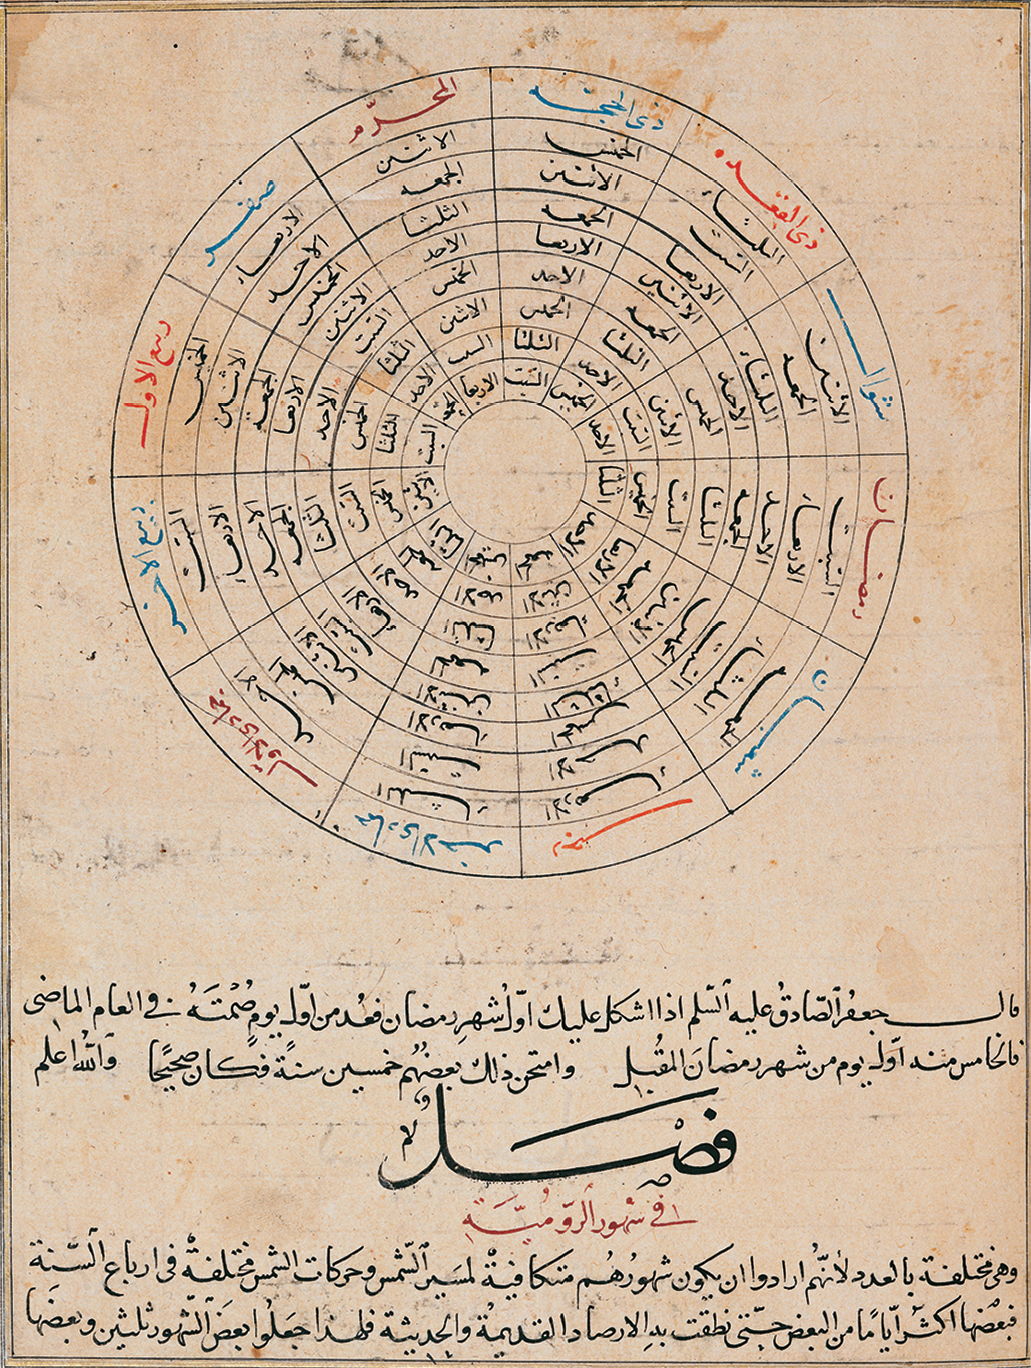 Ilustração. Calendário. Na parte superior, círculo divido em doze partes. Em cada uma há elementos da escrita árabe nas cores preta, azul e vermelha. Na parte inferior, texto com elementos da escrita árabe. O papel apresente desgaste do tempo.